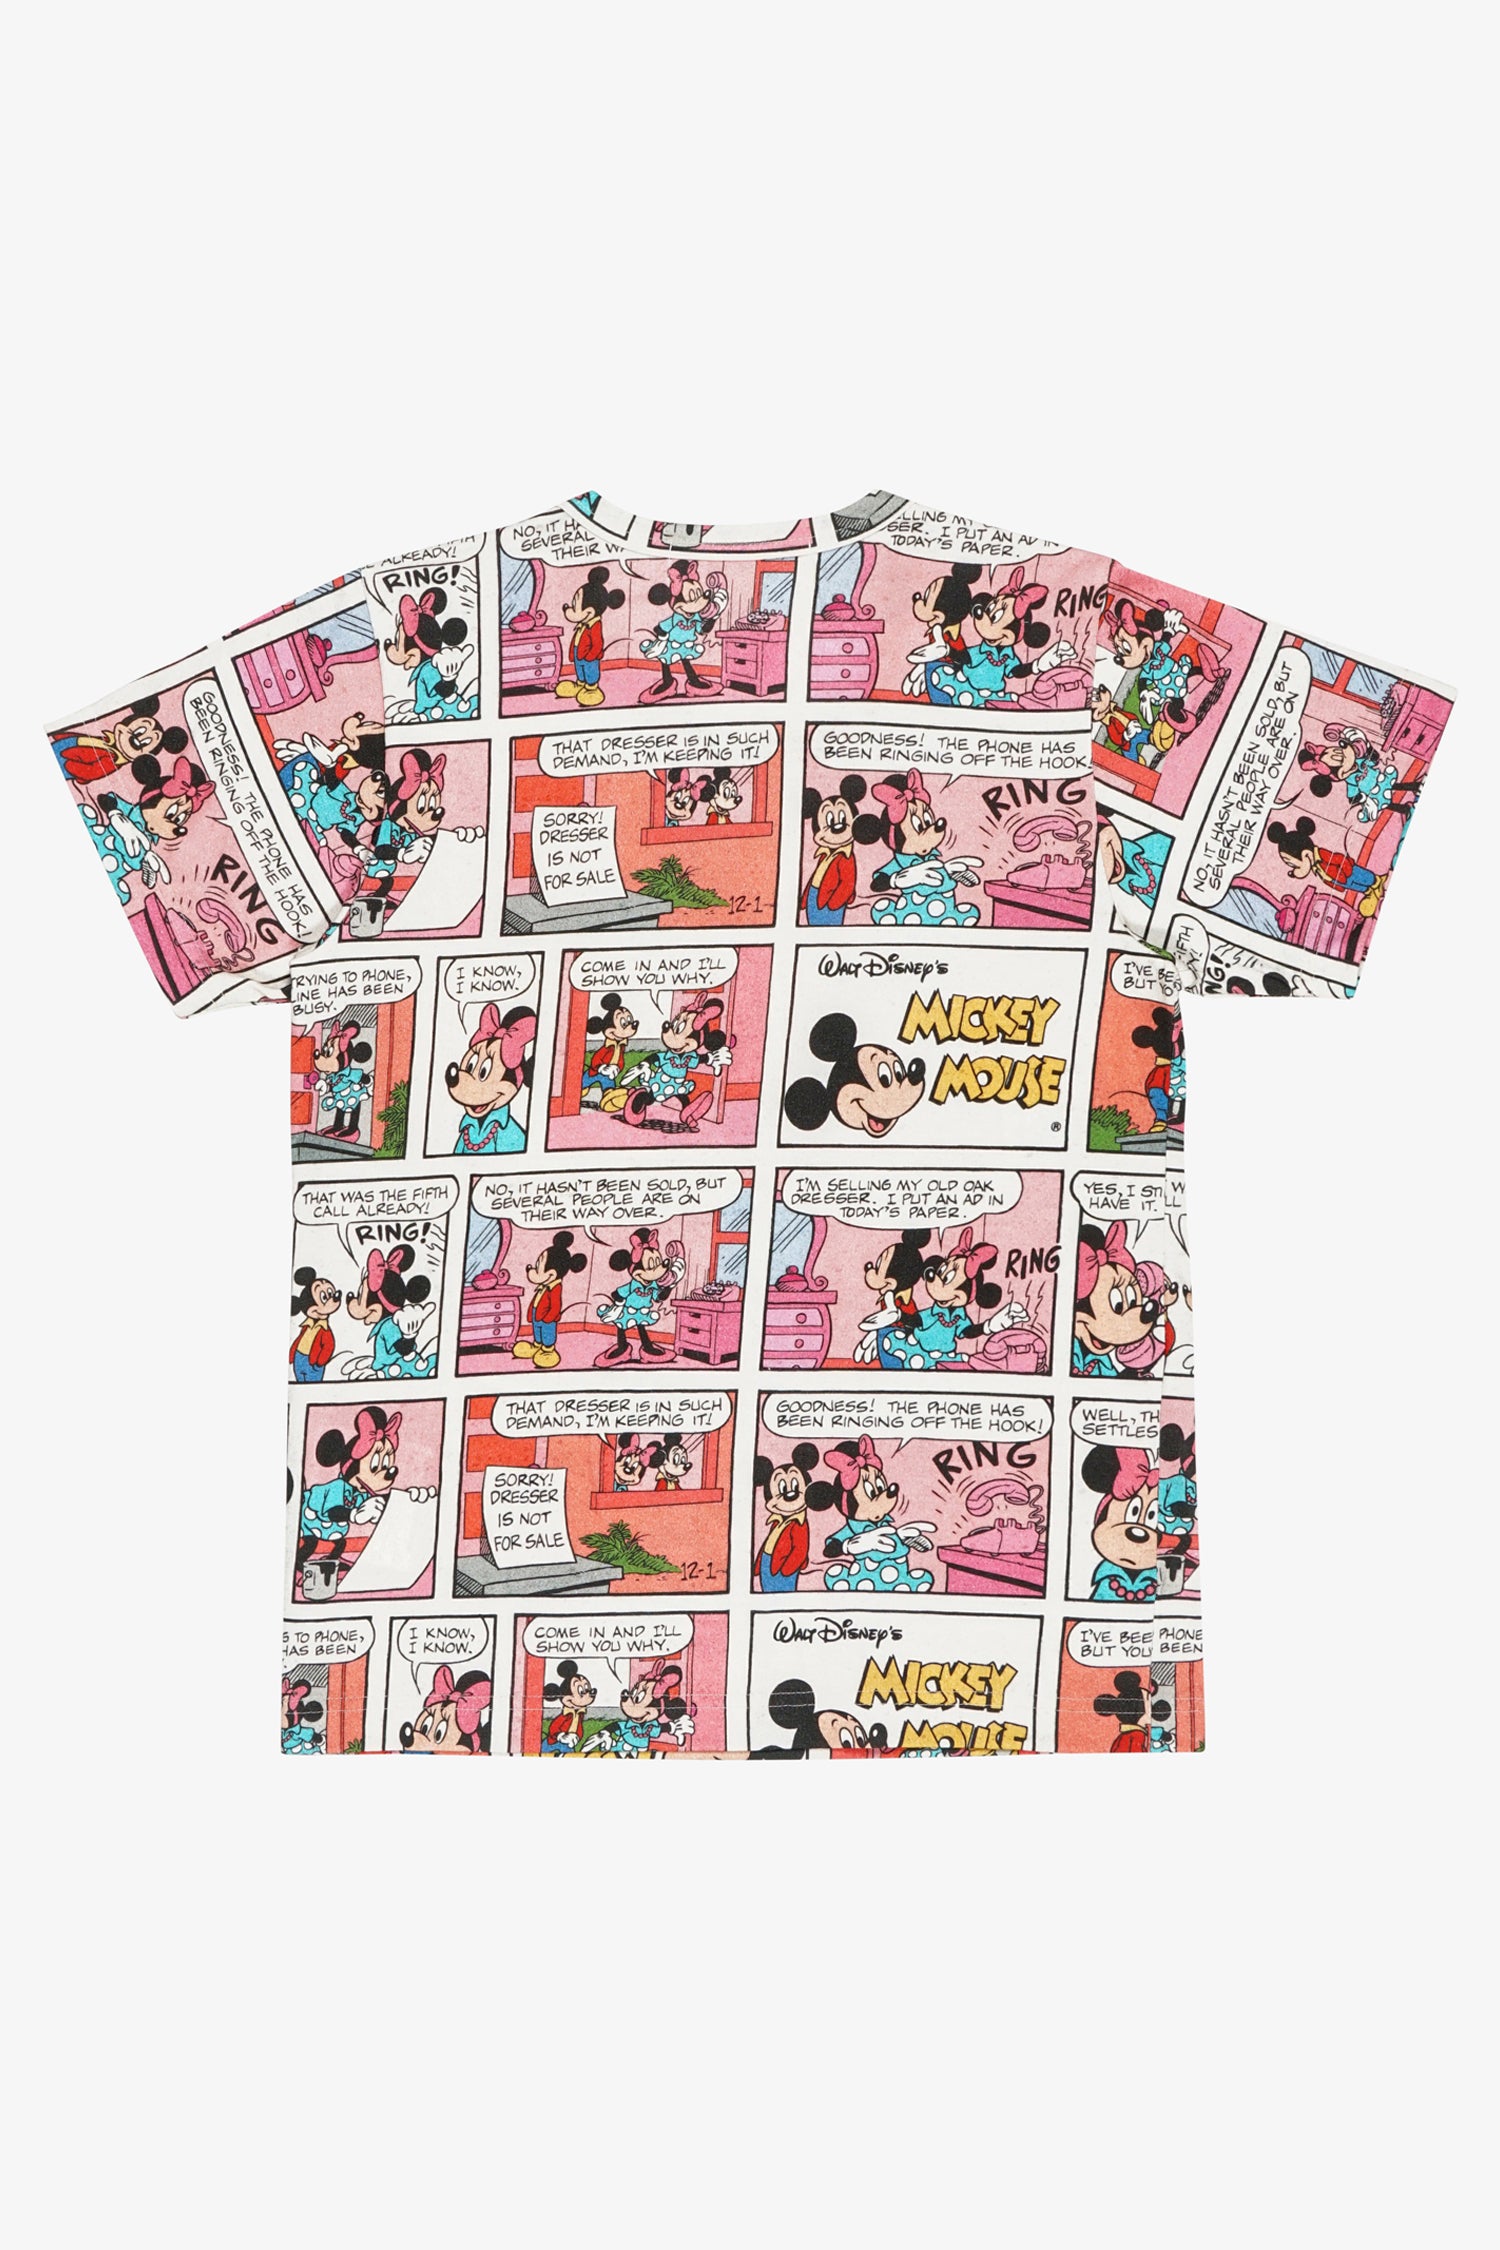 Selectshop FRAME - COMME DES GARÇONS GIRL Comics T-Shirt T-Shirts Dubai